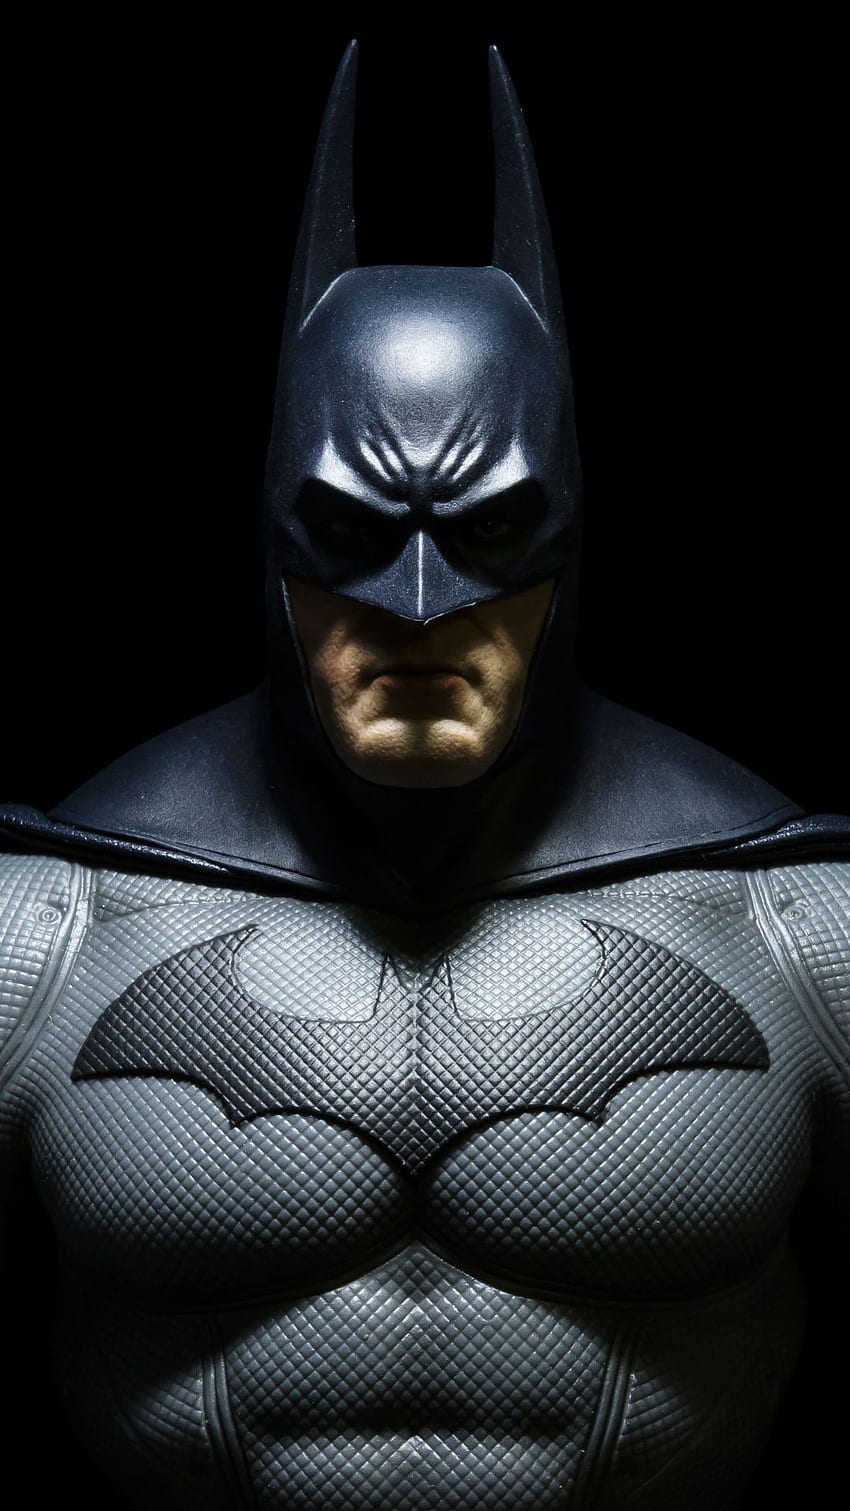 Siêu anh hùng Batman 3D: Đắm mình vào thế giới siêu anh hùng với hình nền Batman 3D thật chân thực và sống động. Với chi tiết tinh xảo và màu sắc đẹp mắt, bạn sẽ cảm nhận được sự mạnh mẽ và uy lực của Siêu anh hùng Batman. Hãy cùng thưởng thức những tác phẩm nghệ thuật 3D tuyệt đẹp về siêu anh hùng Batman trên hình nền của mình ngay hôm nay!